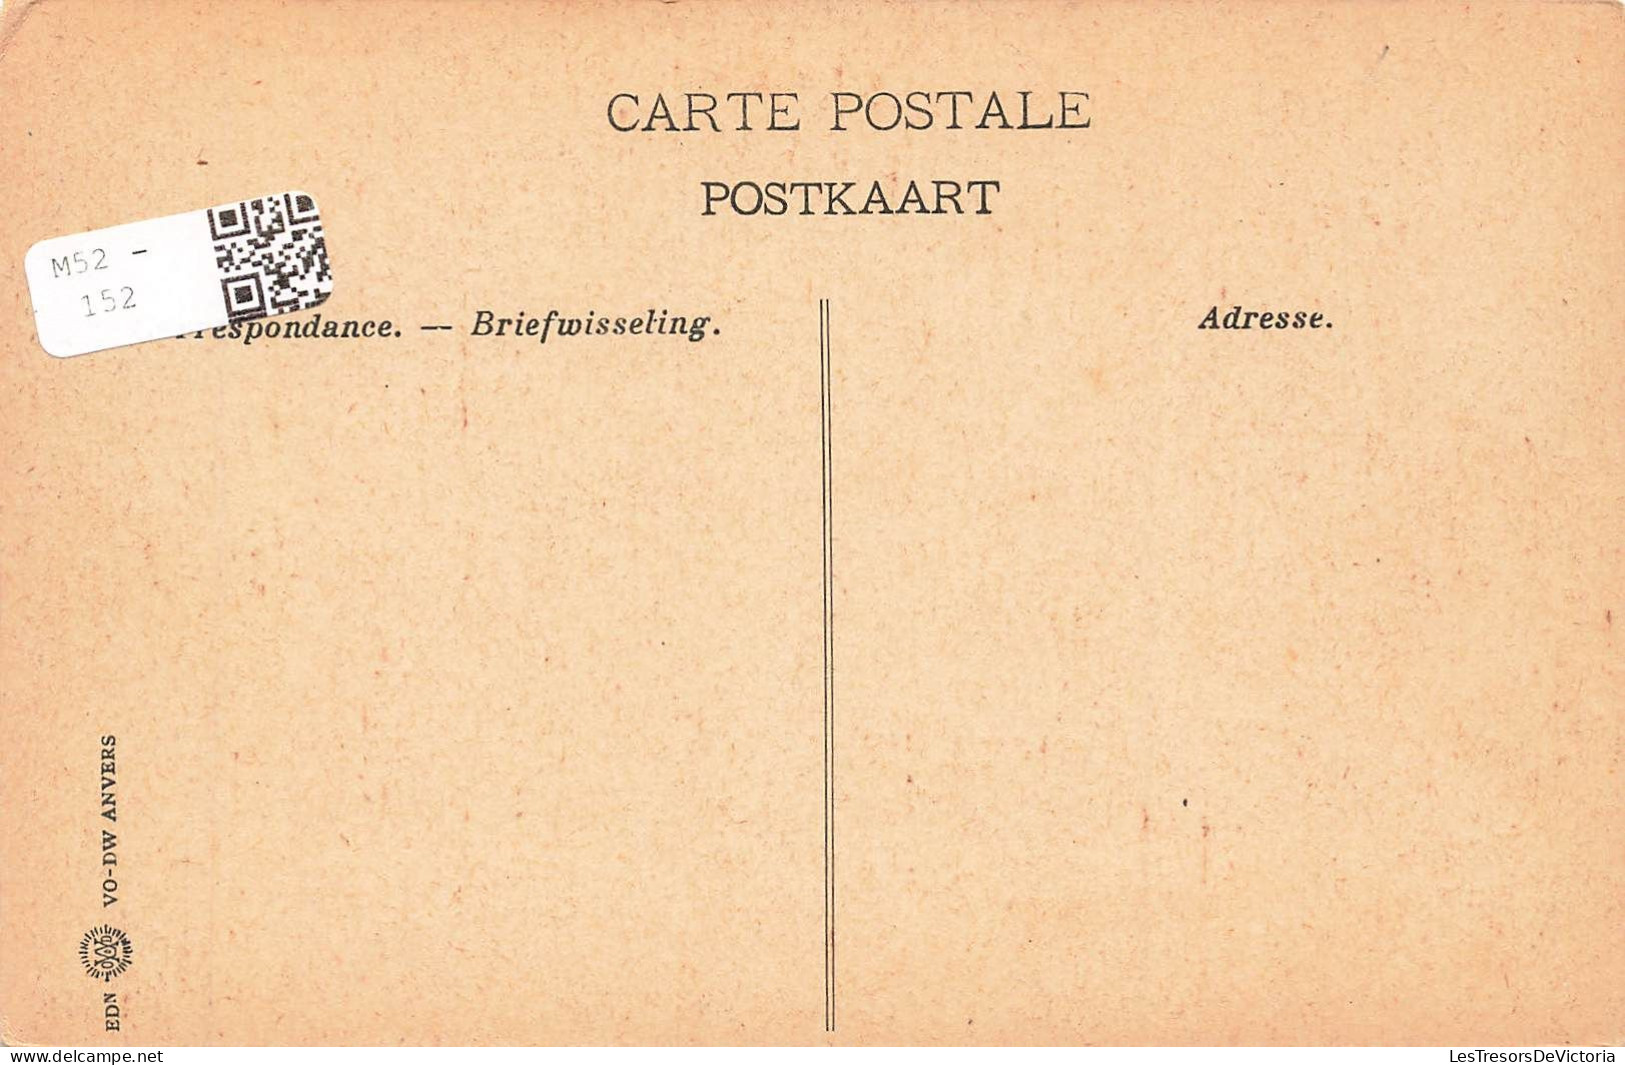 BELGIQUE - Liège - Boulevard De La Sauvenière - Carte Postale Ancienne - Lüttich